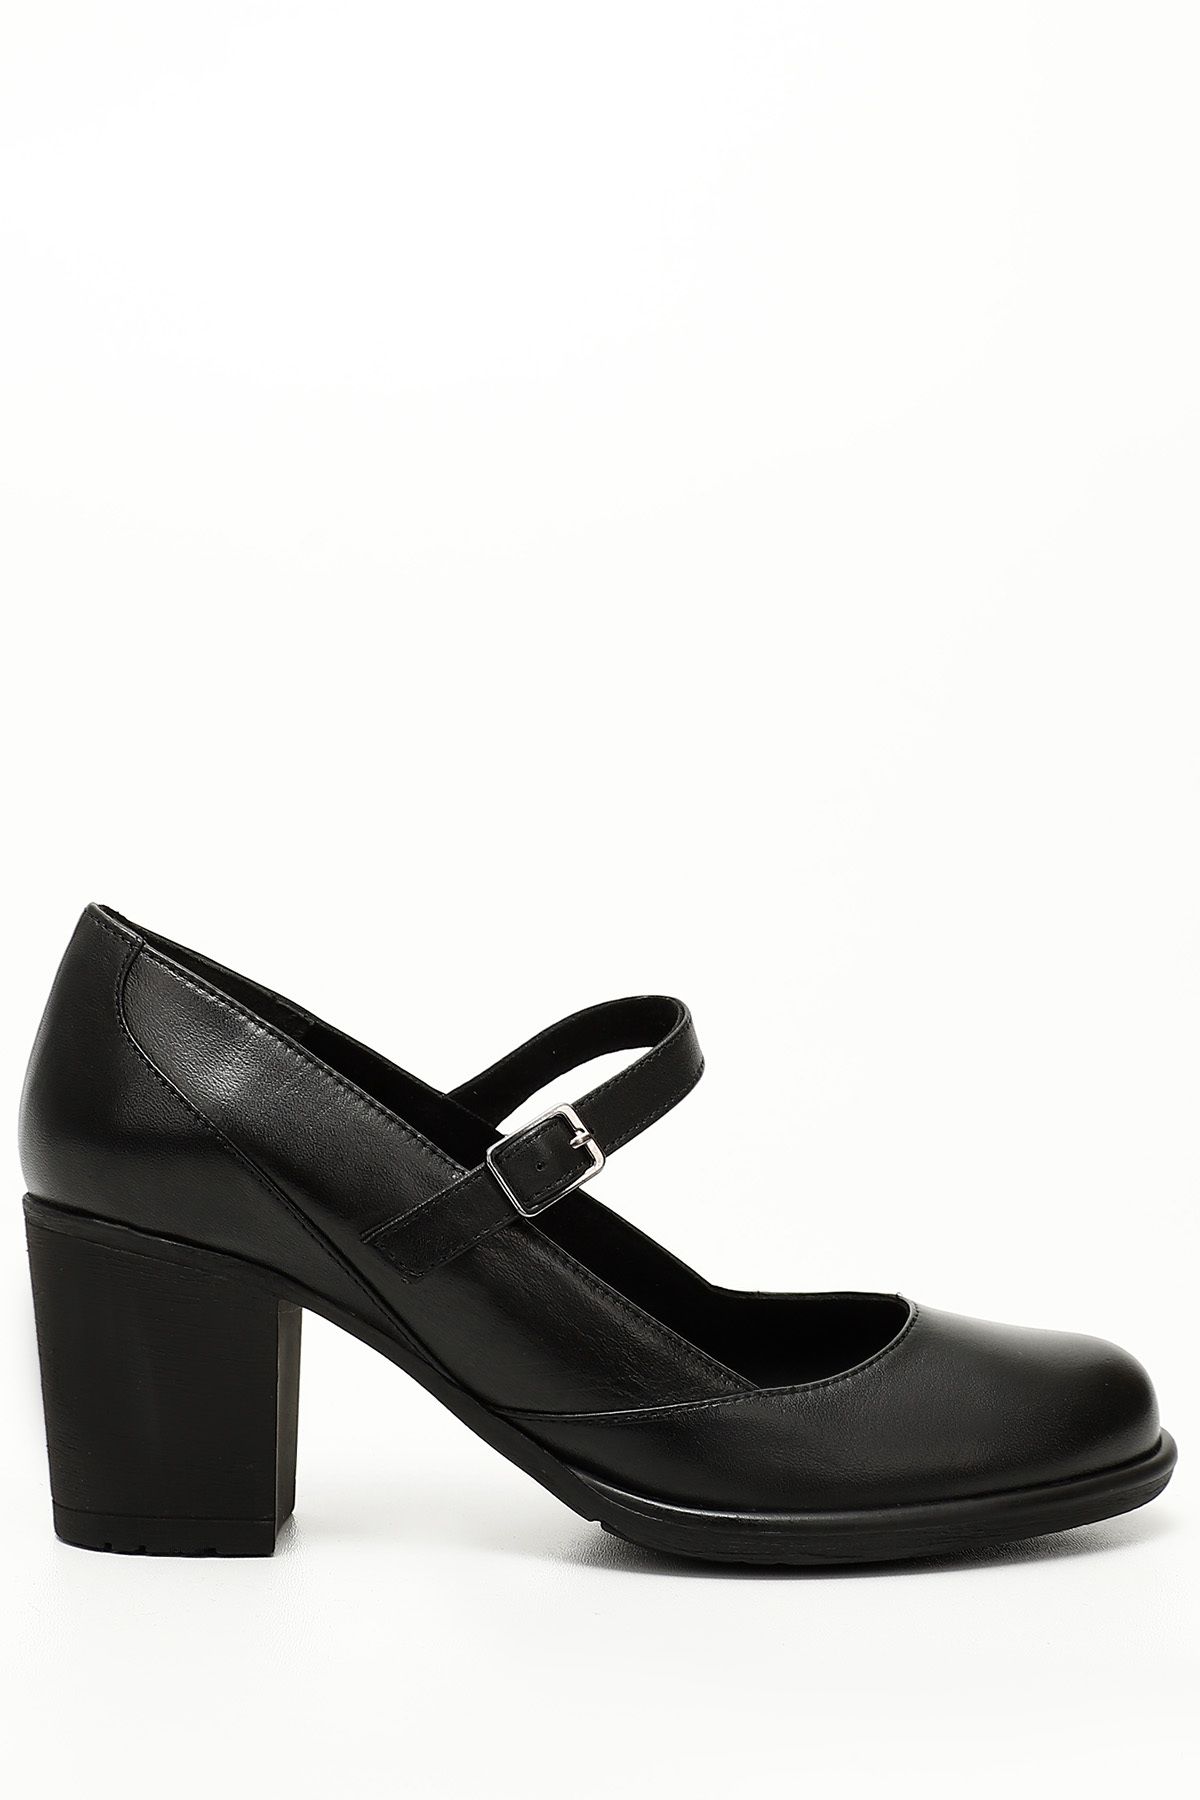 GÖNDERİ(R) Siyah Gön Hakiki Deri Yuvarlak Burun Orta Topuklu Kauçuk Taban Kadın Ayakkabı 24136